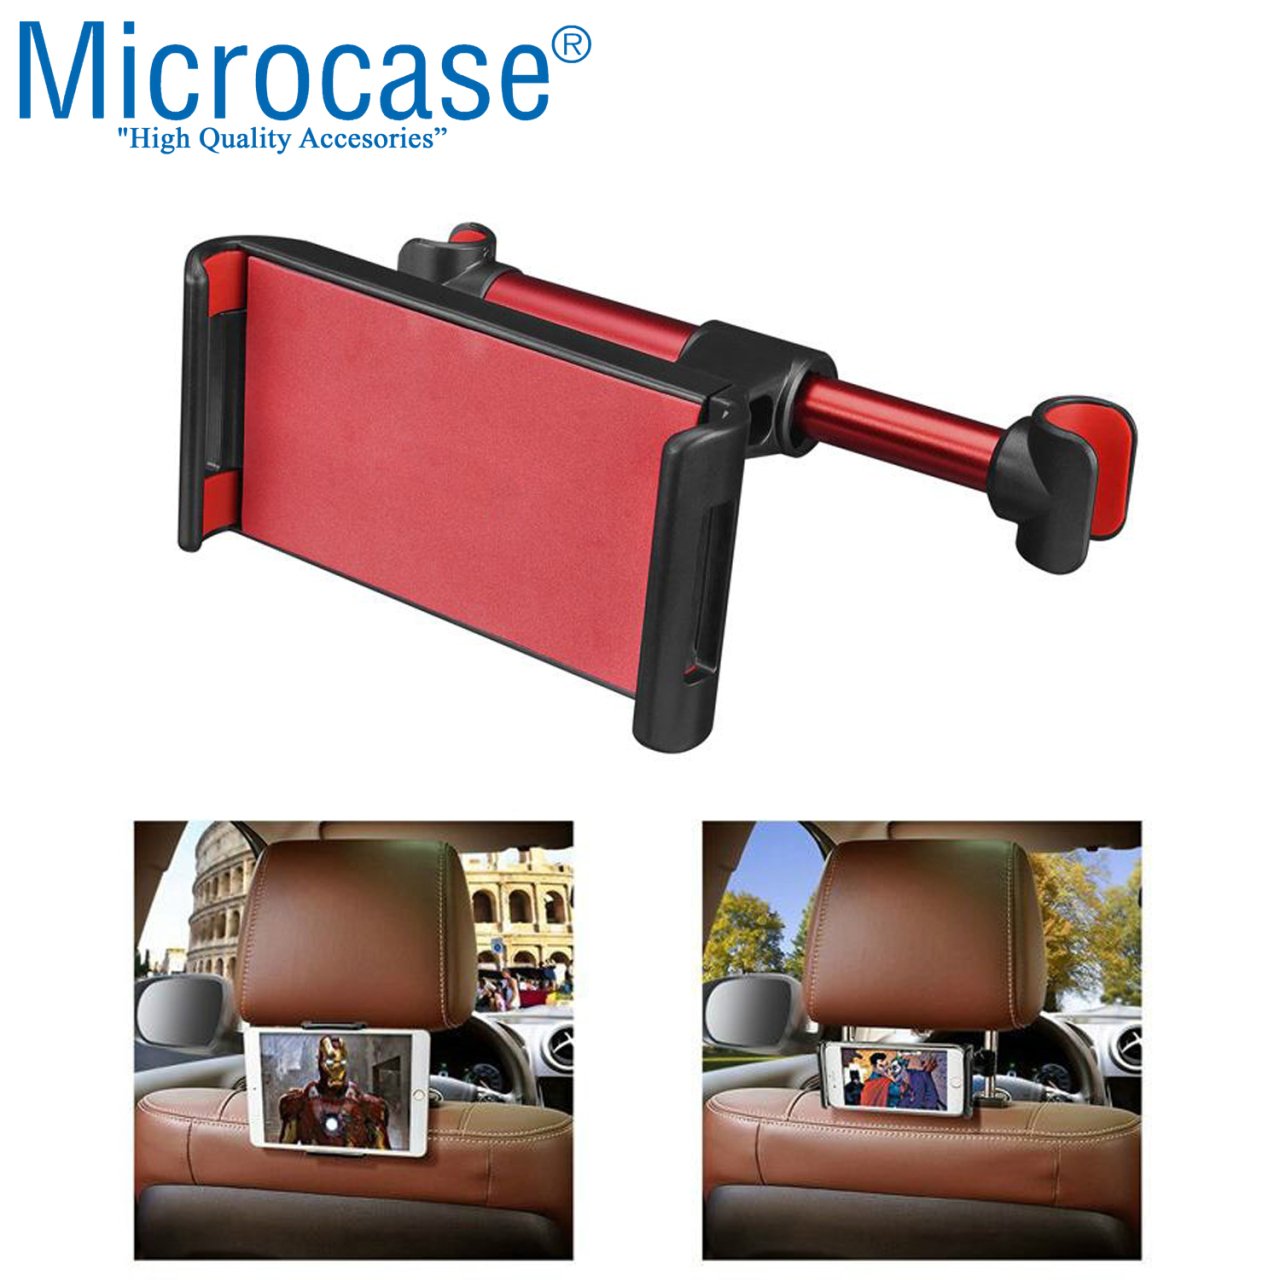 Microcase Araç İçi Koltuk Arkası Tablet Telefon Tutucu Siyah-Kırmızı - AL2901